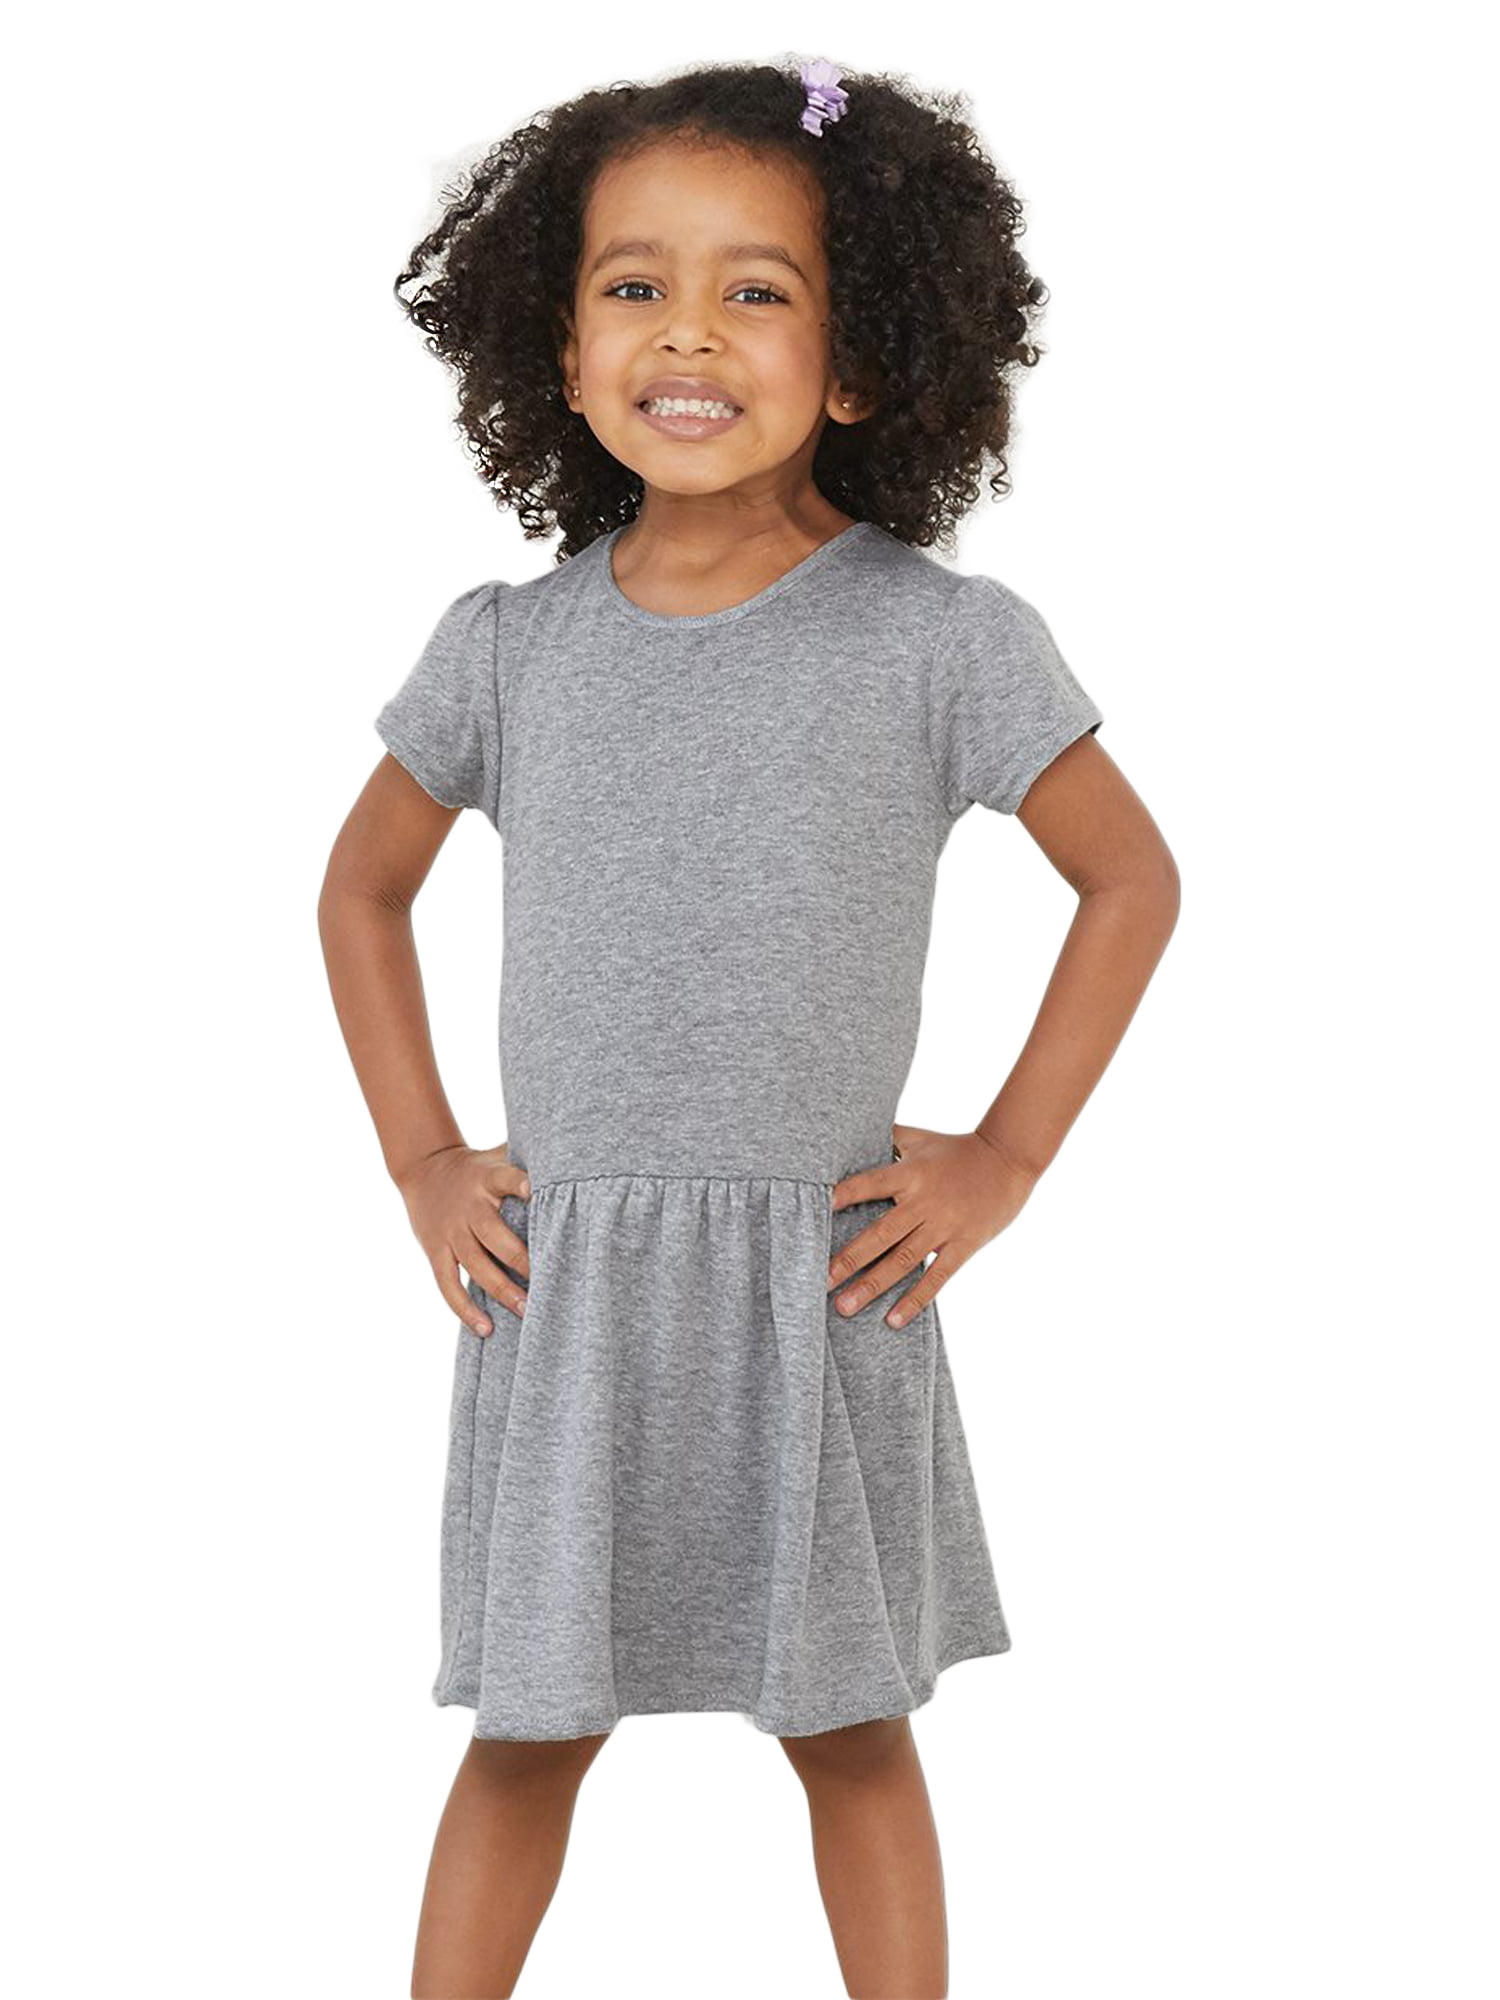 Short Sleeve Button Sweet Summer Shirt Sundress for Toddler 6M-4T Transer Kids Baby Girls Off Shoulder Dress